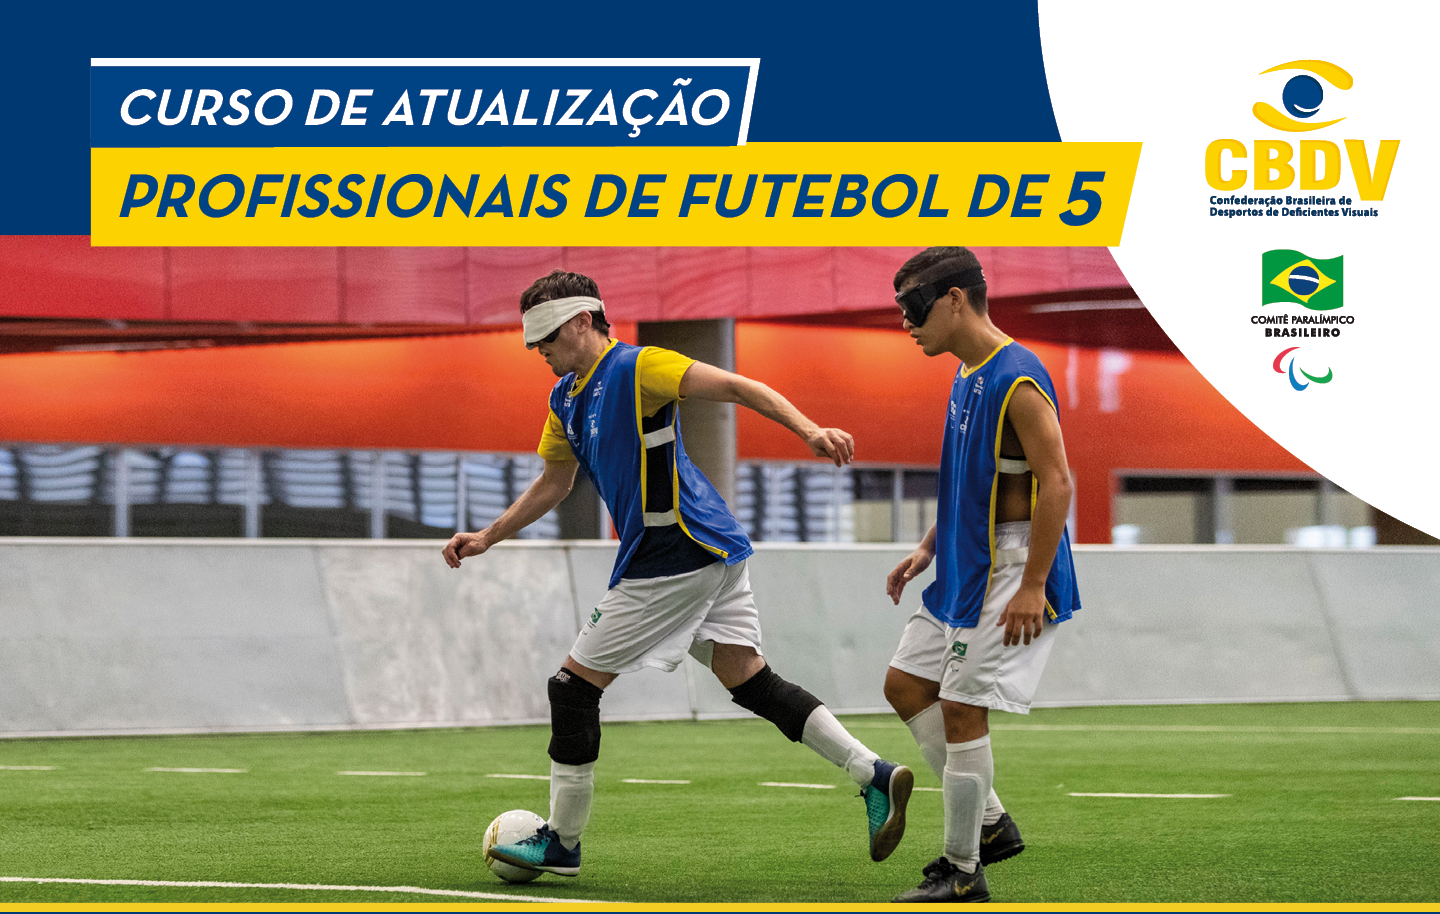 Cursos de Futebol Online - FC FUTEBOL